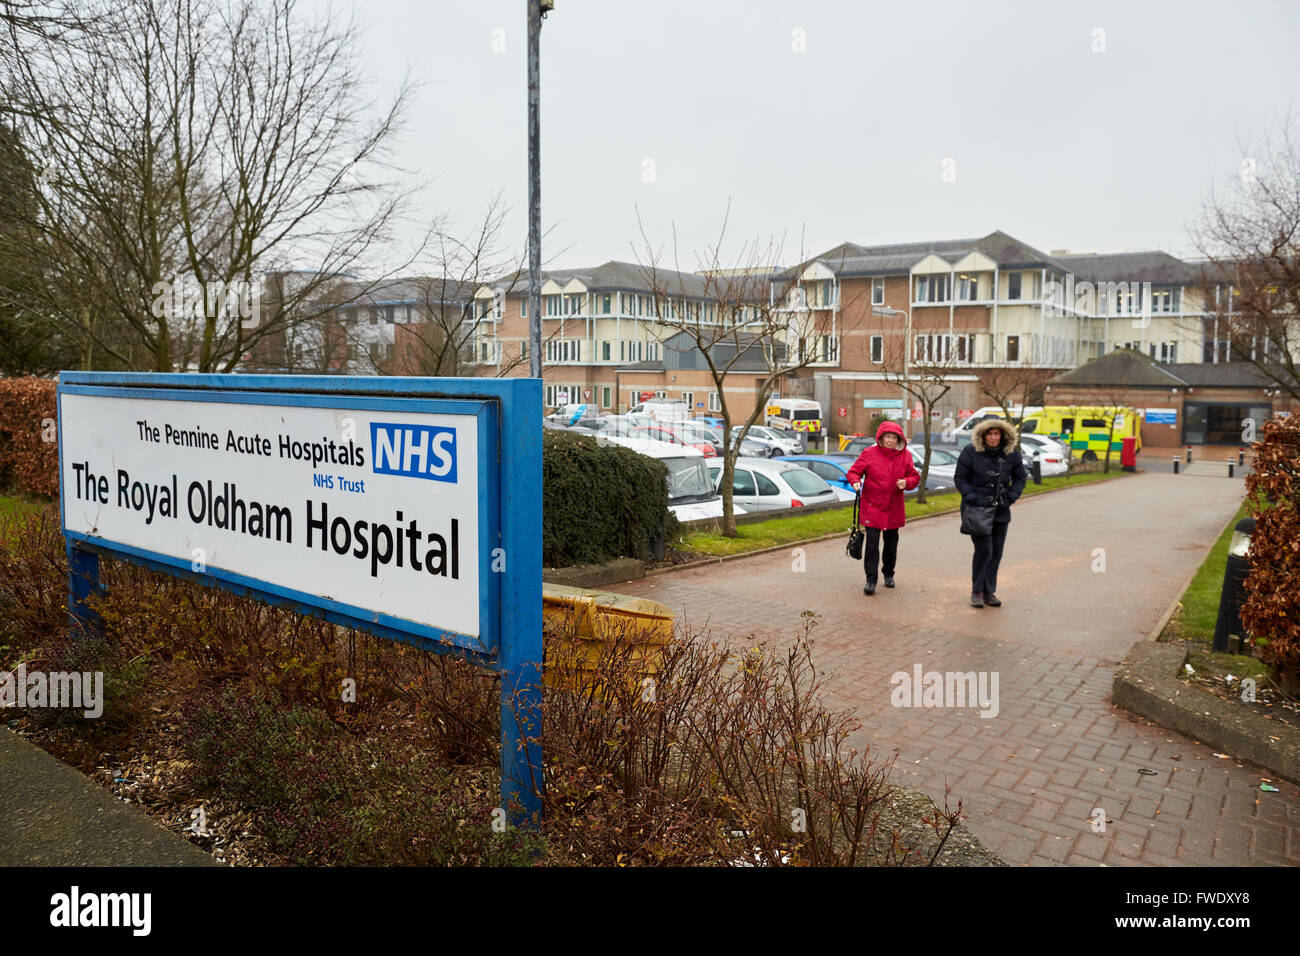 Oldham Royal Pennine akute Krankenhäuser NHS Vertrauen früher bekannt als Oldham und District General Hospital Coldhurst Bereich der Oldha Stockfoto